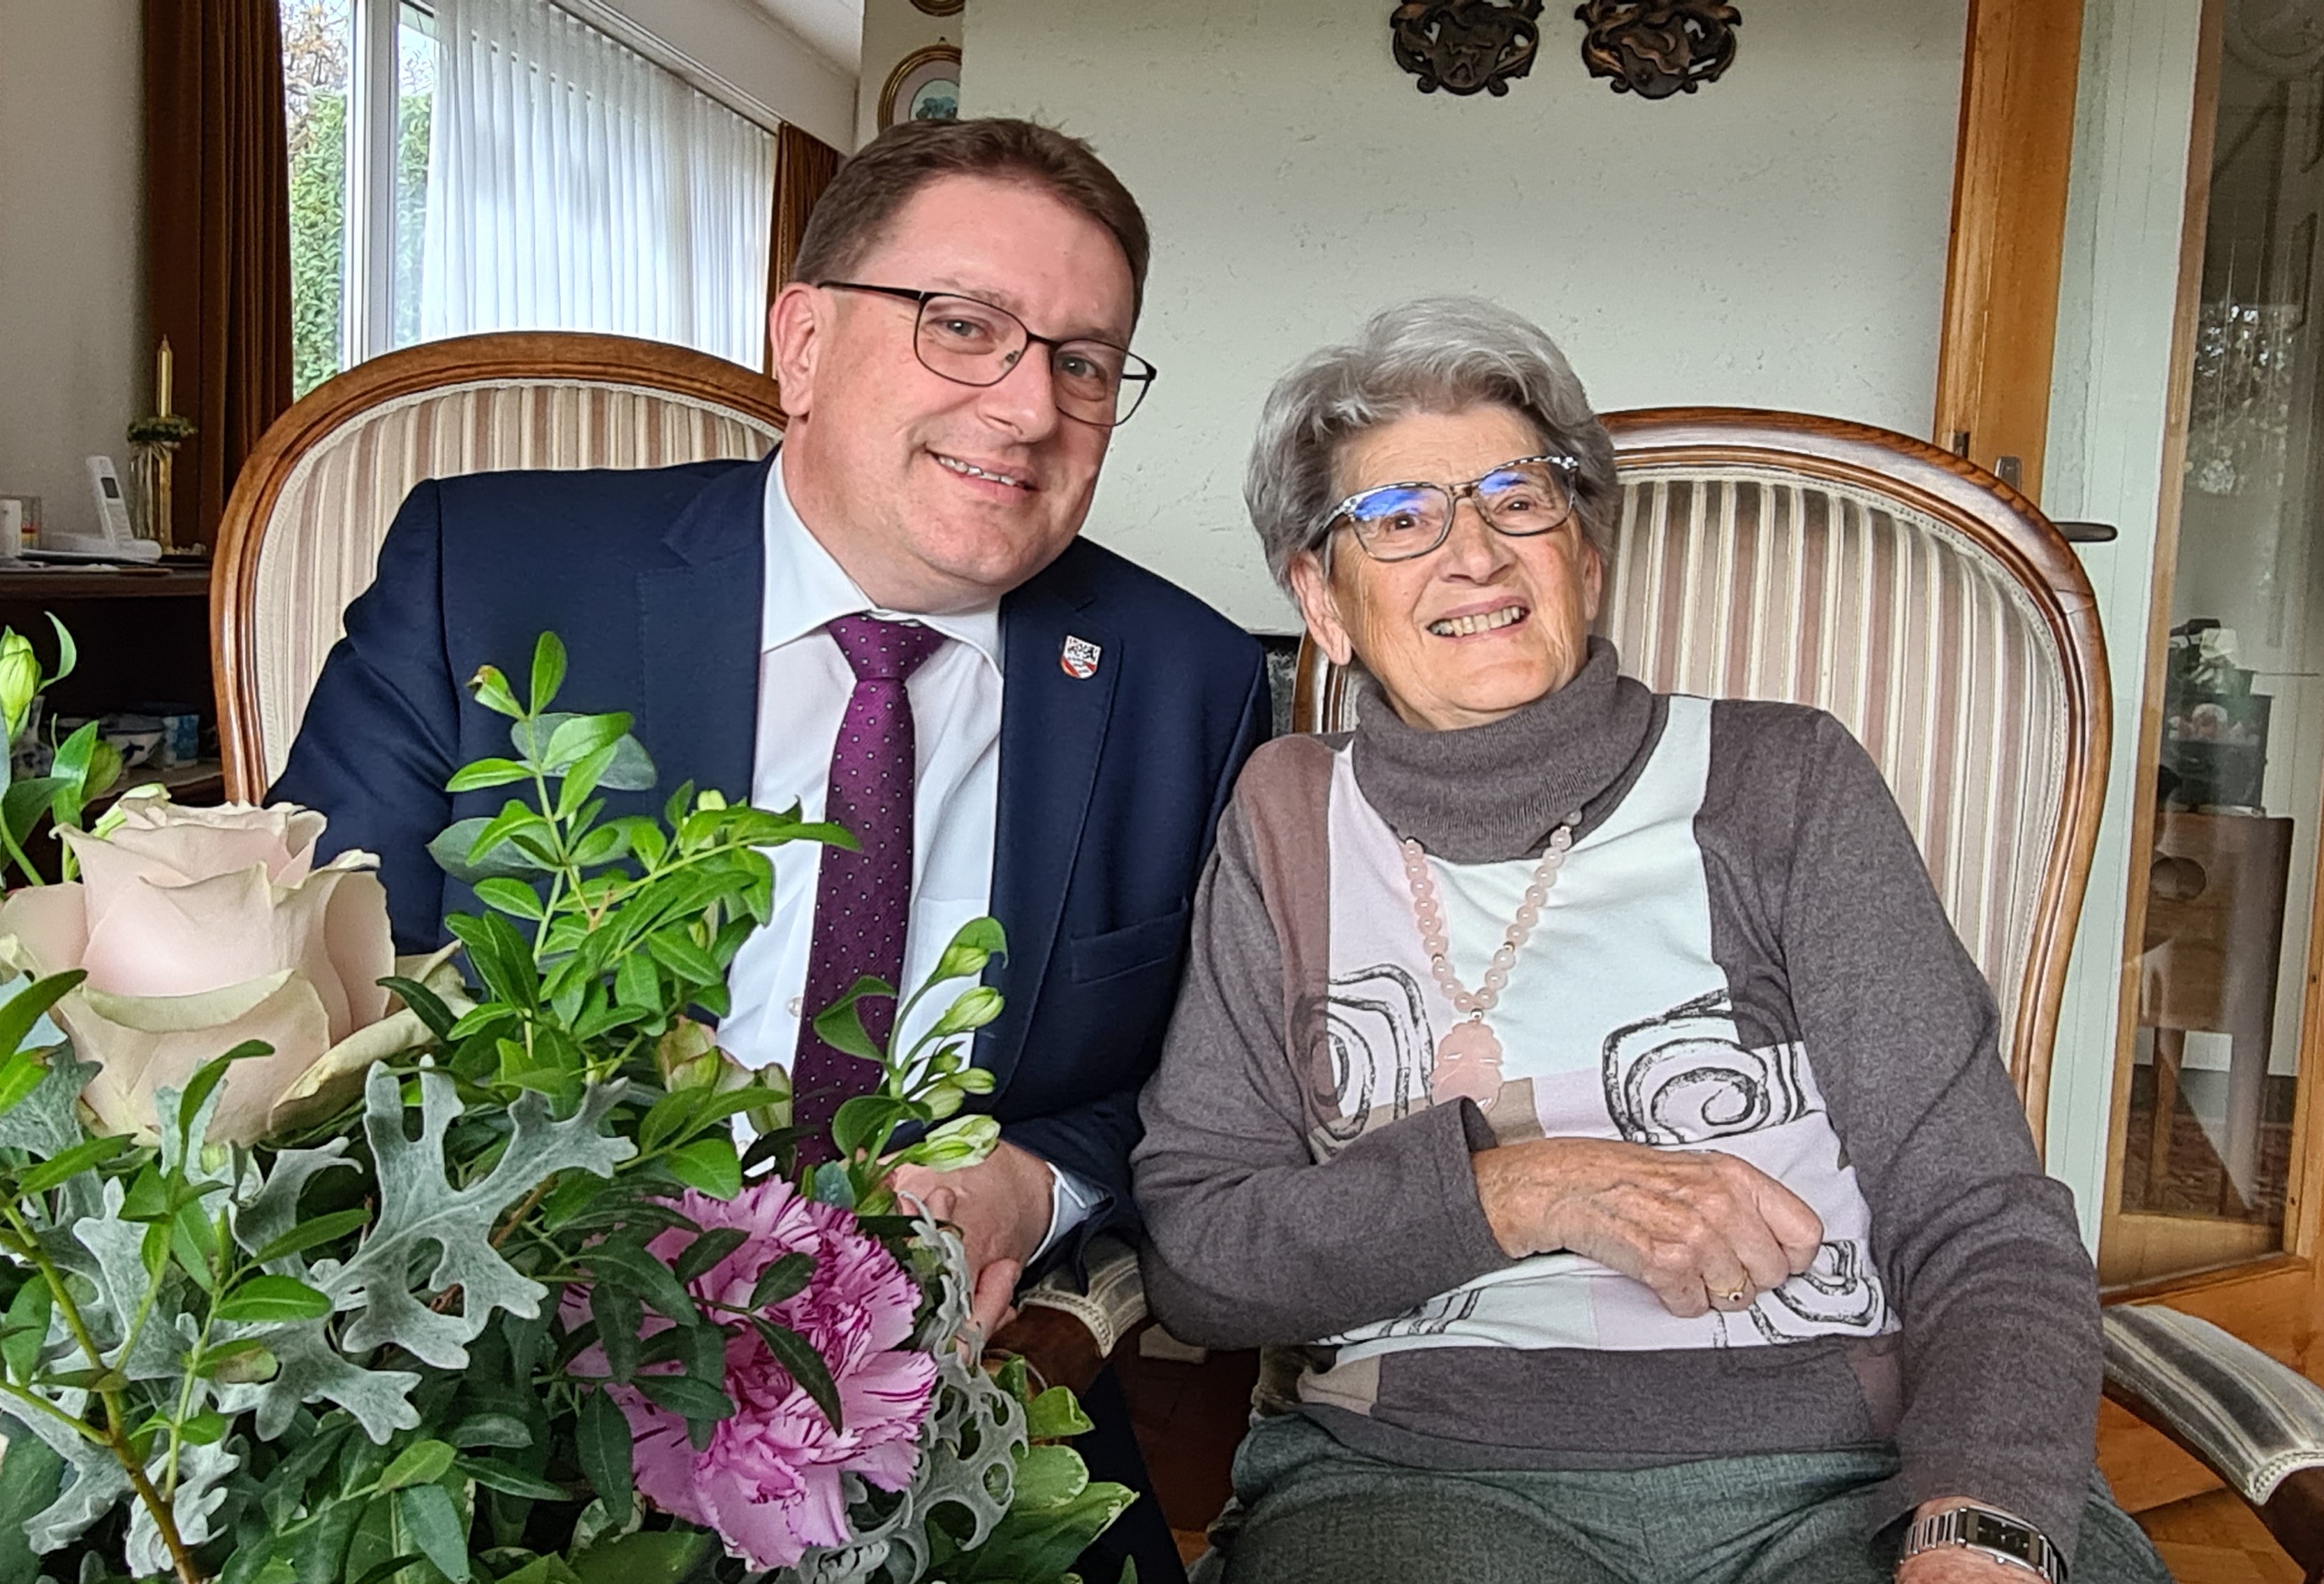 Am Sonntag, 20. November 2022, durfte Frau Rosmarie Rieser Ihren 90. Geburtstag feiern.
Die Gemeindebehörden gratulieren ganz herzlich dazu!